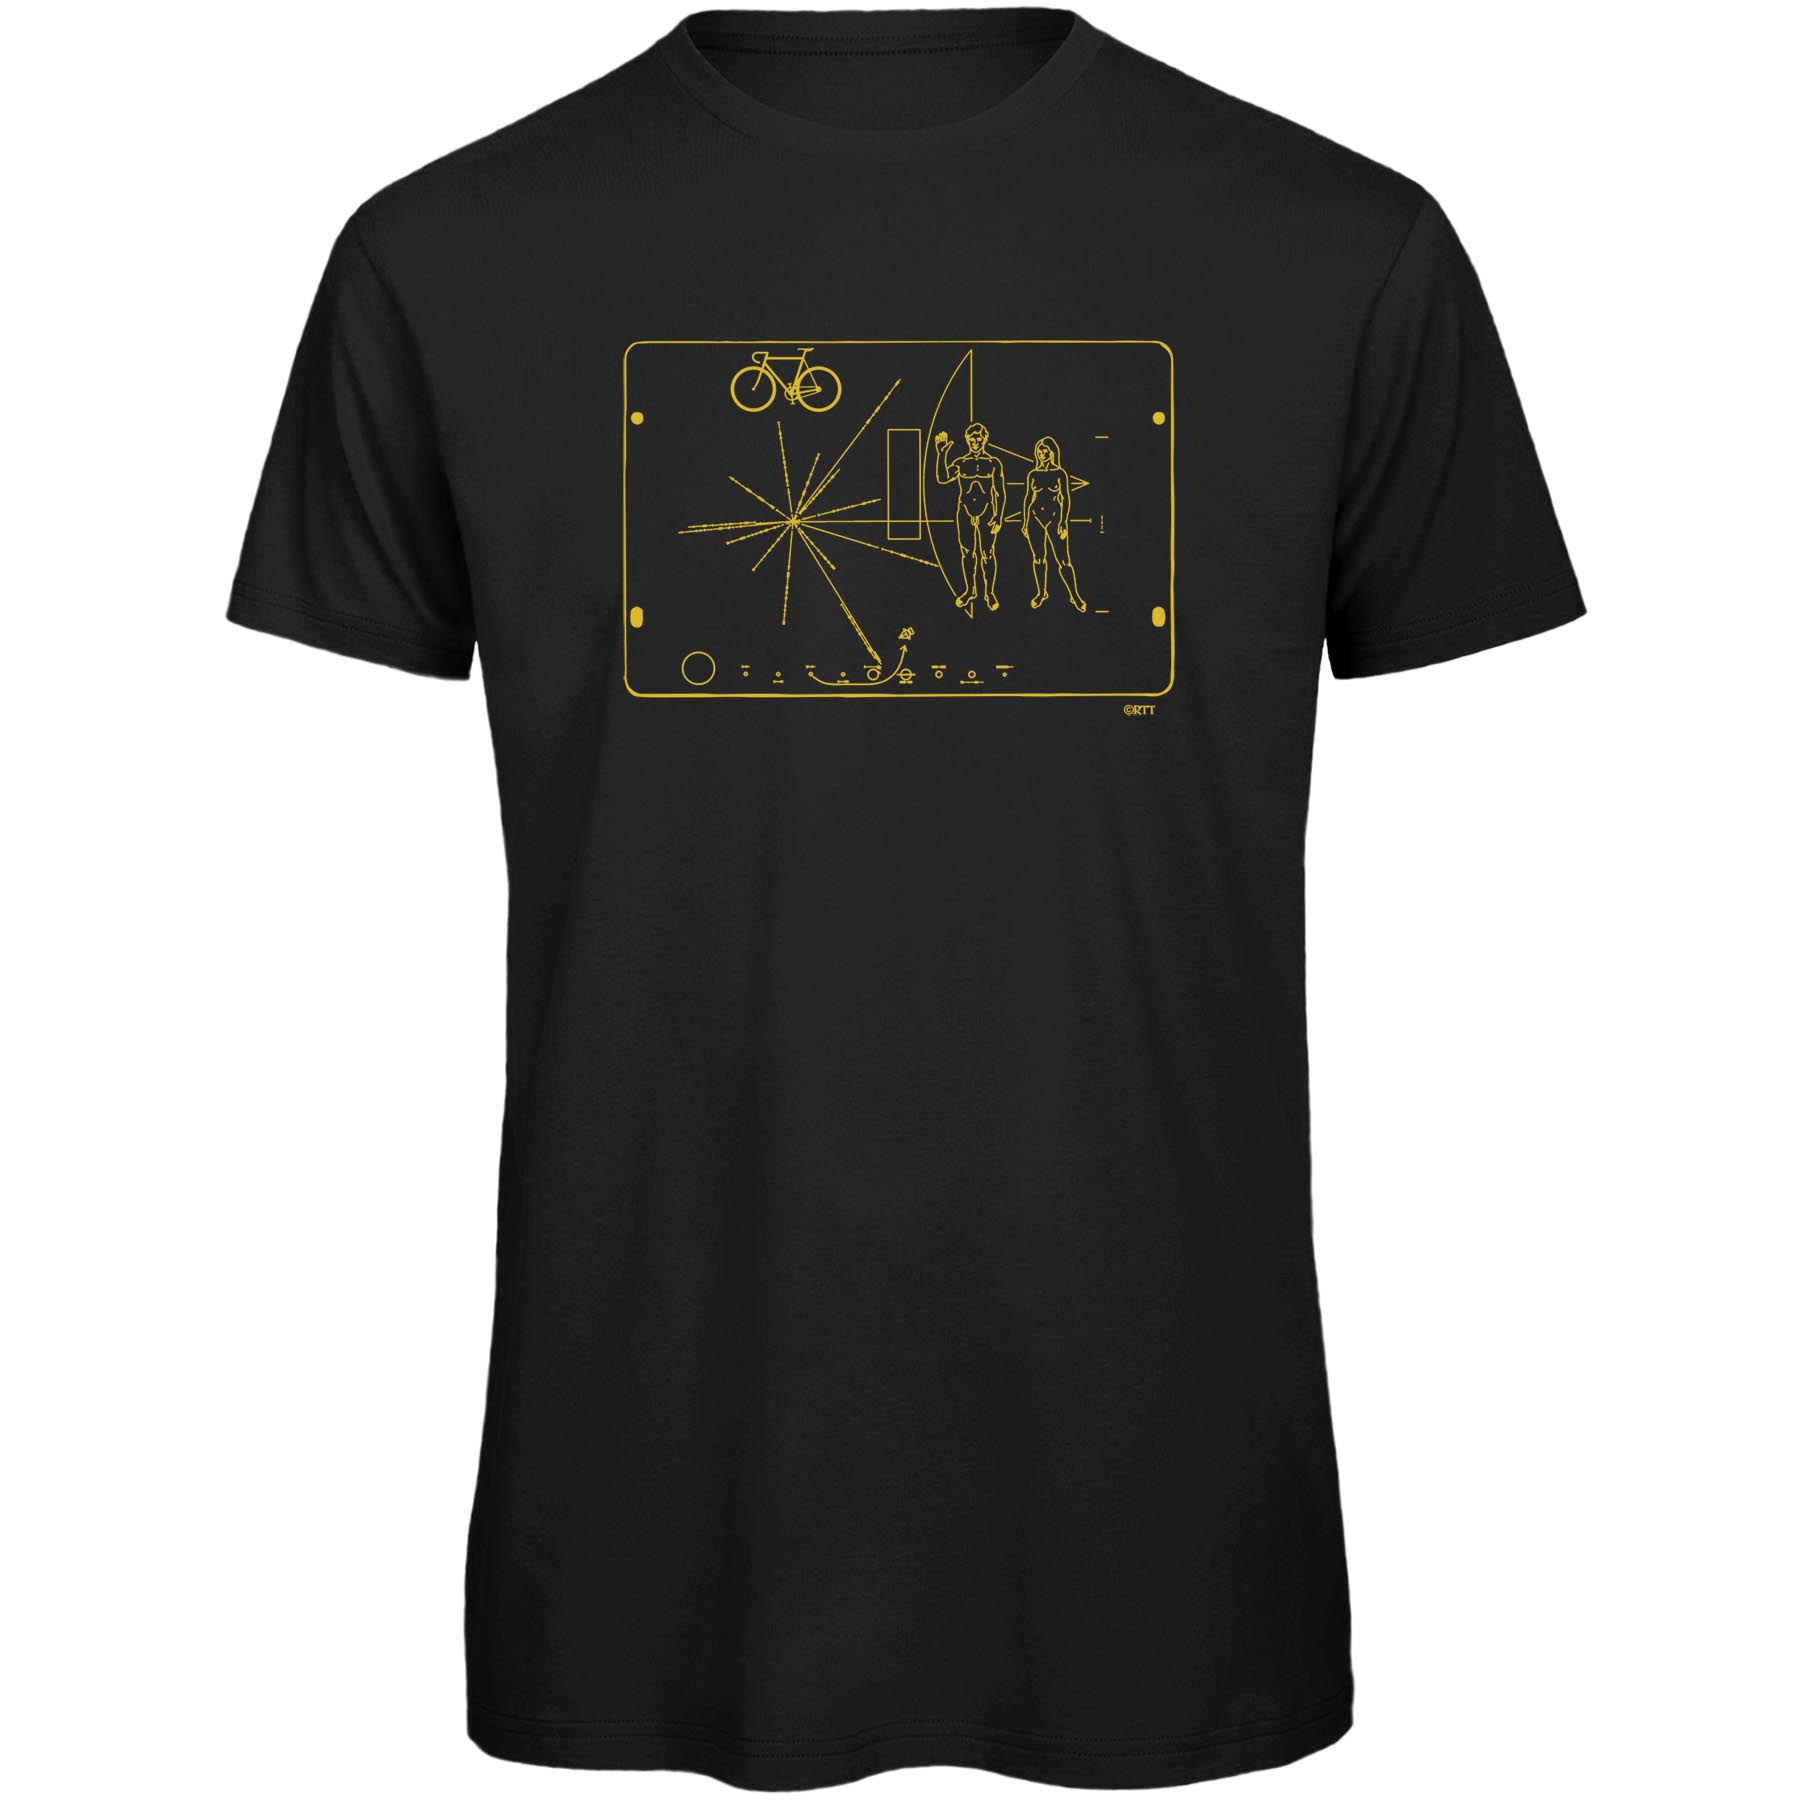 Produktbild von RTTshirts Pioneer Fahrrad T-Shirt Herren - schwarz